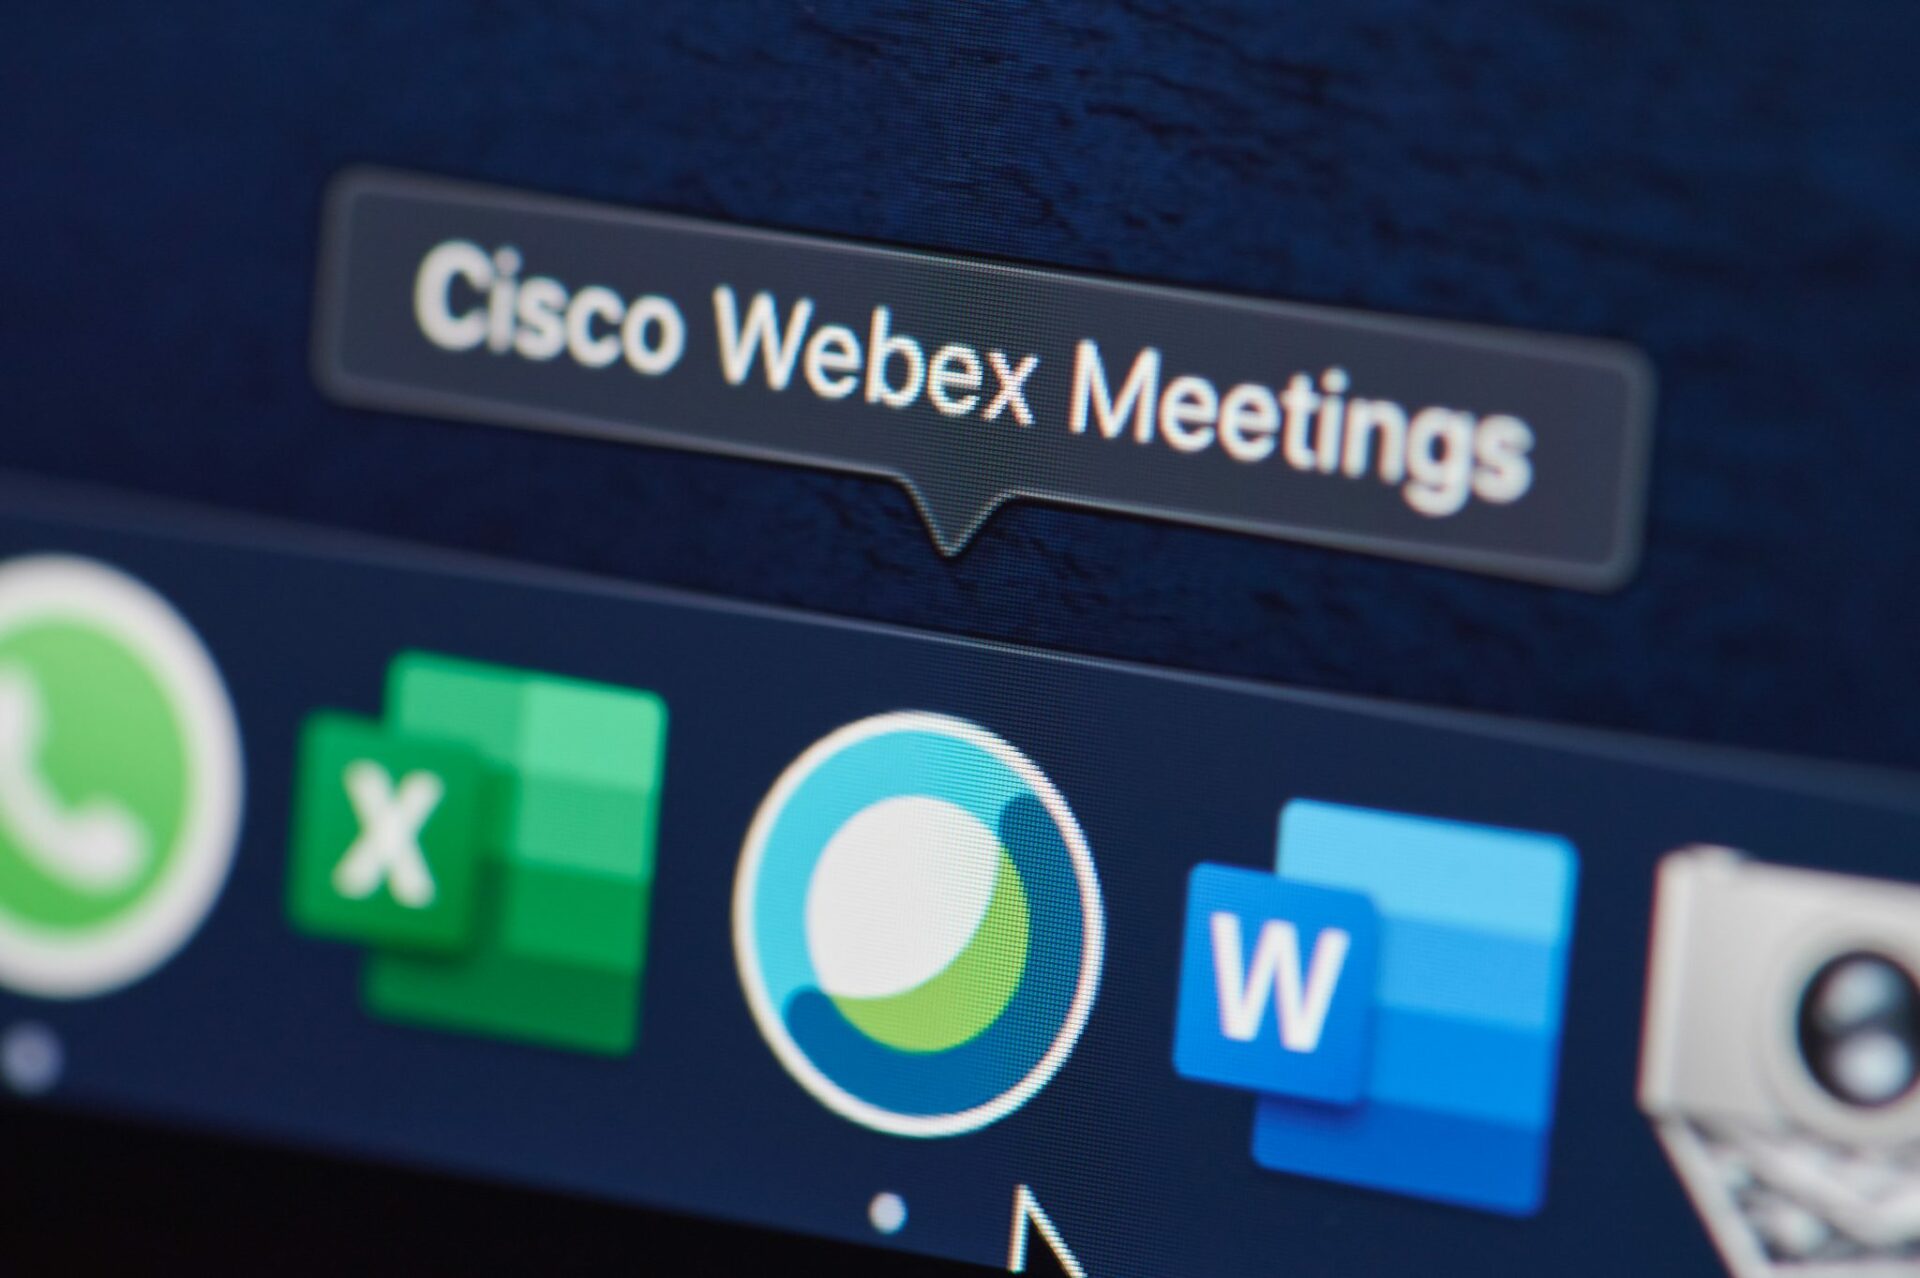 Cisco webex